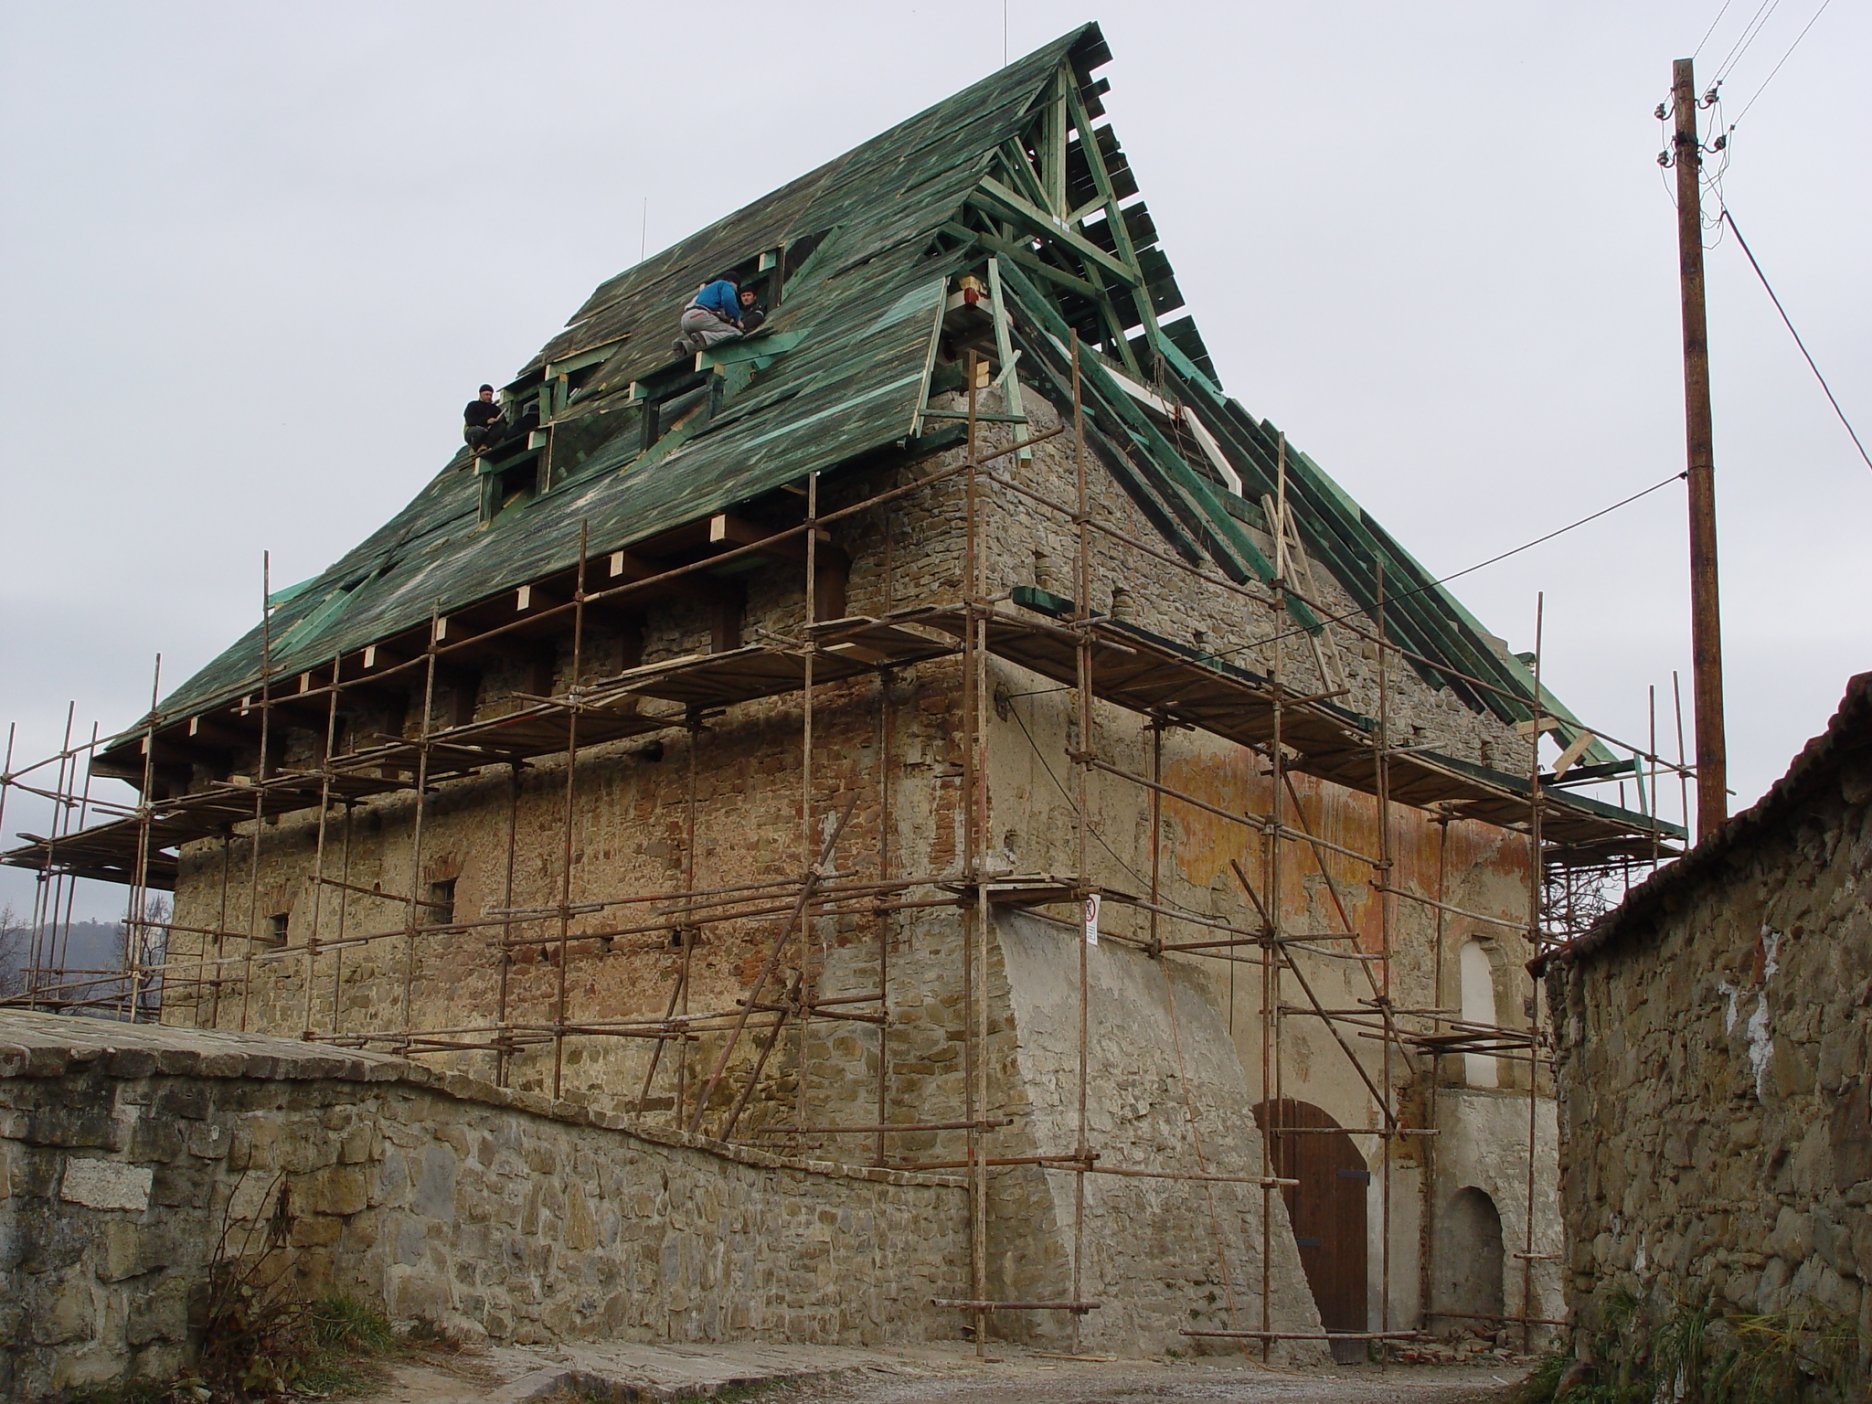 Pohľad z hradobnej uličky - stav počas obnovy strechy